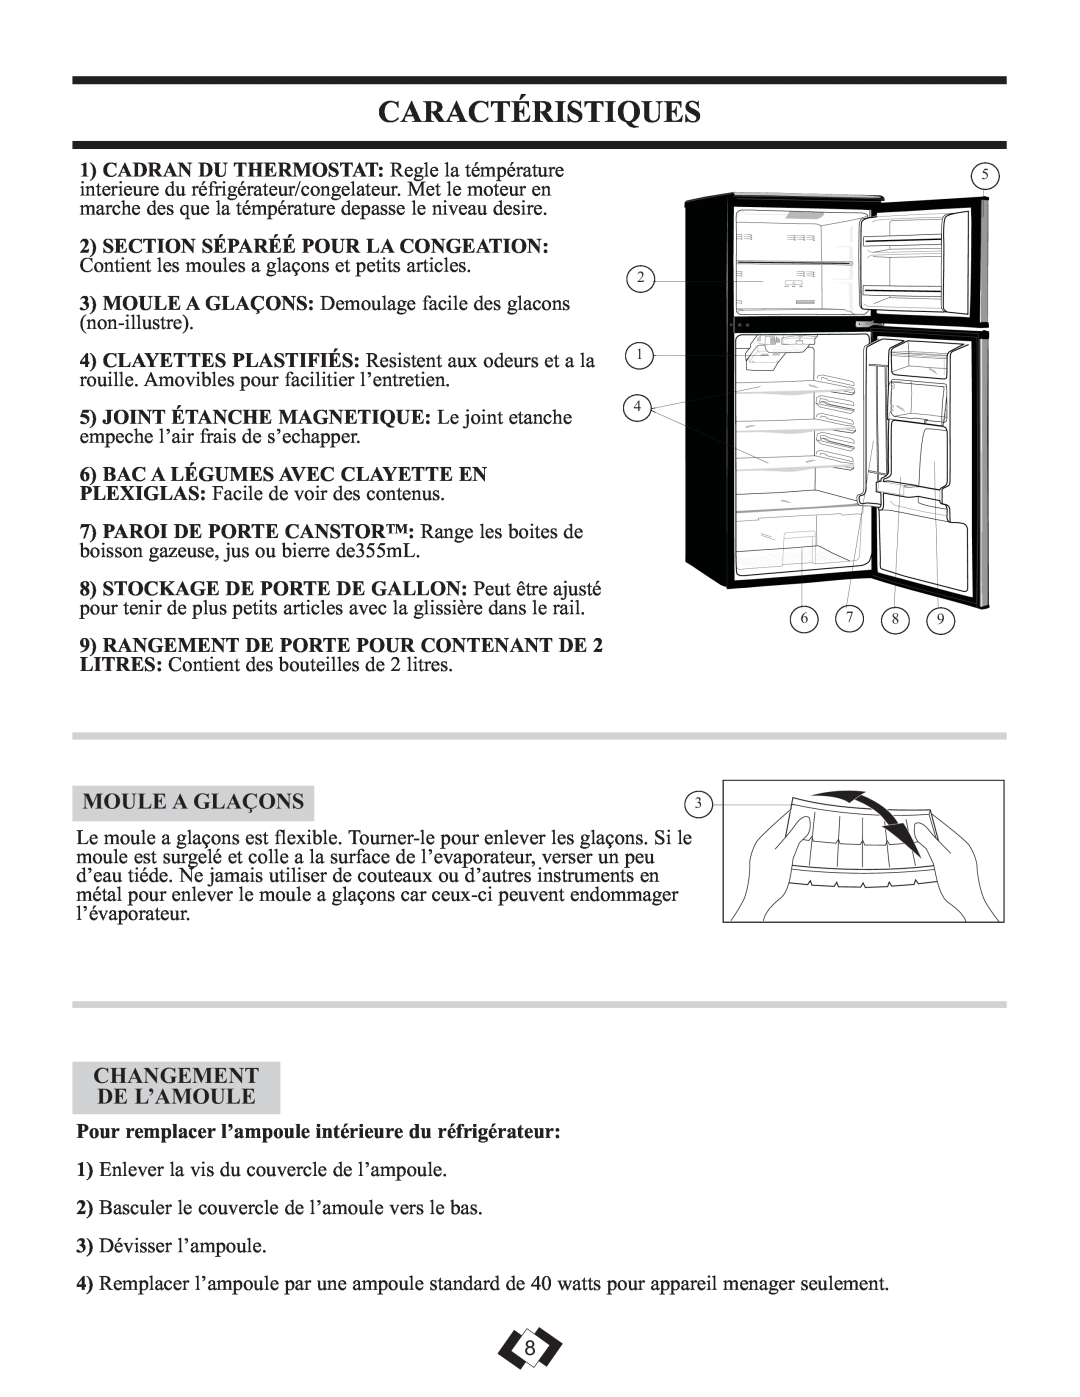 Sunbeam DFF258BLSSB installation instructions Caractéristiques, Moule A Glaçons, Changement De L’Amoule 